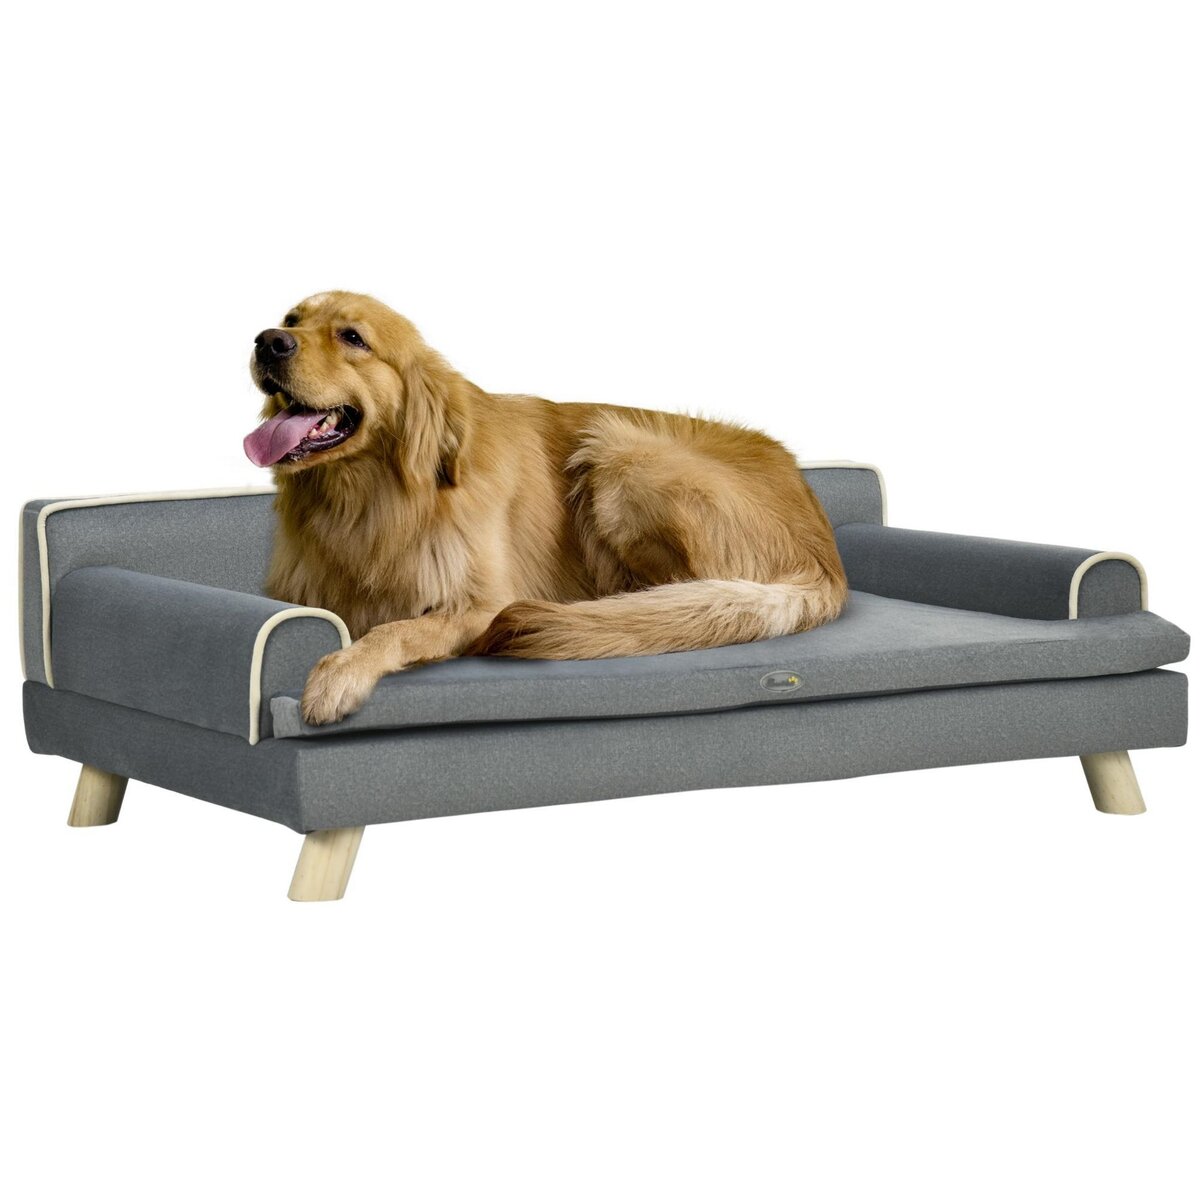 PAWHUT Canapé chien lit pour chien design scandinave coussin moelleux piètement bois dim. 100L x 62l x 32H cm polyester gris